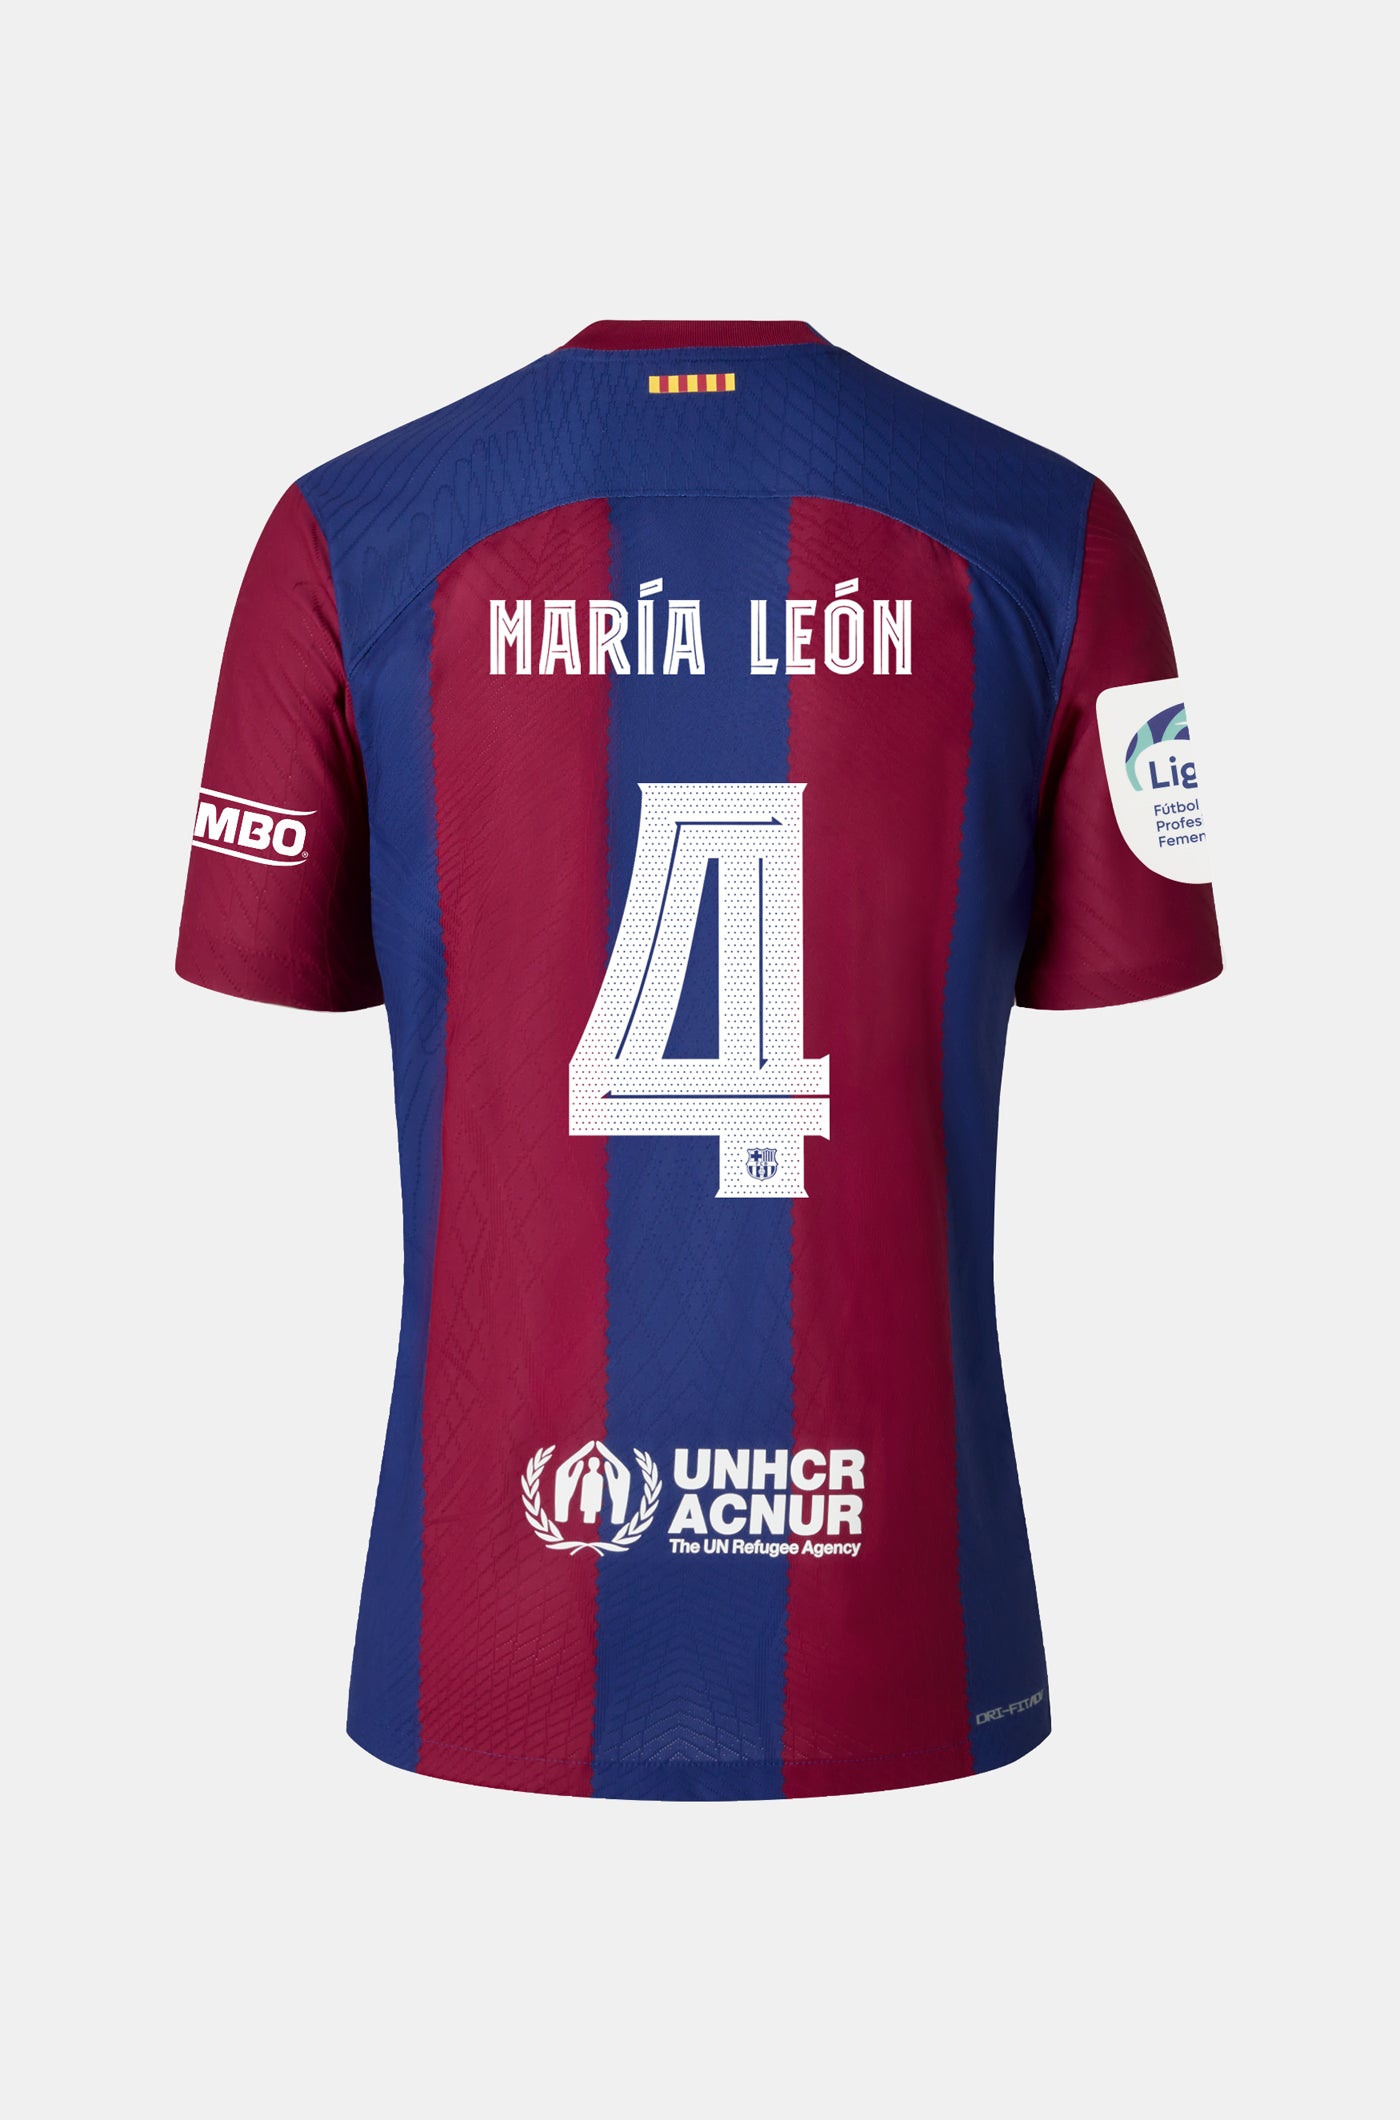 Liga F FC Barcelona home shirt 23/24 - Women - MARÍA LEÓN